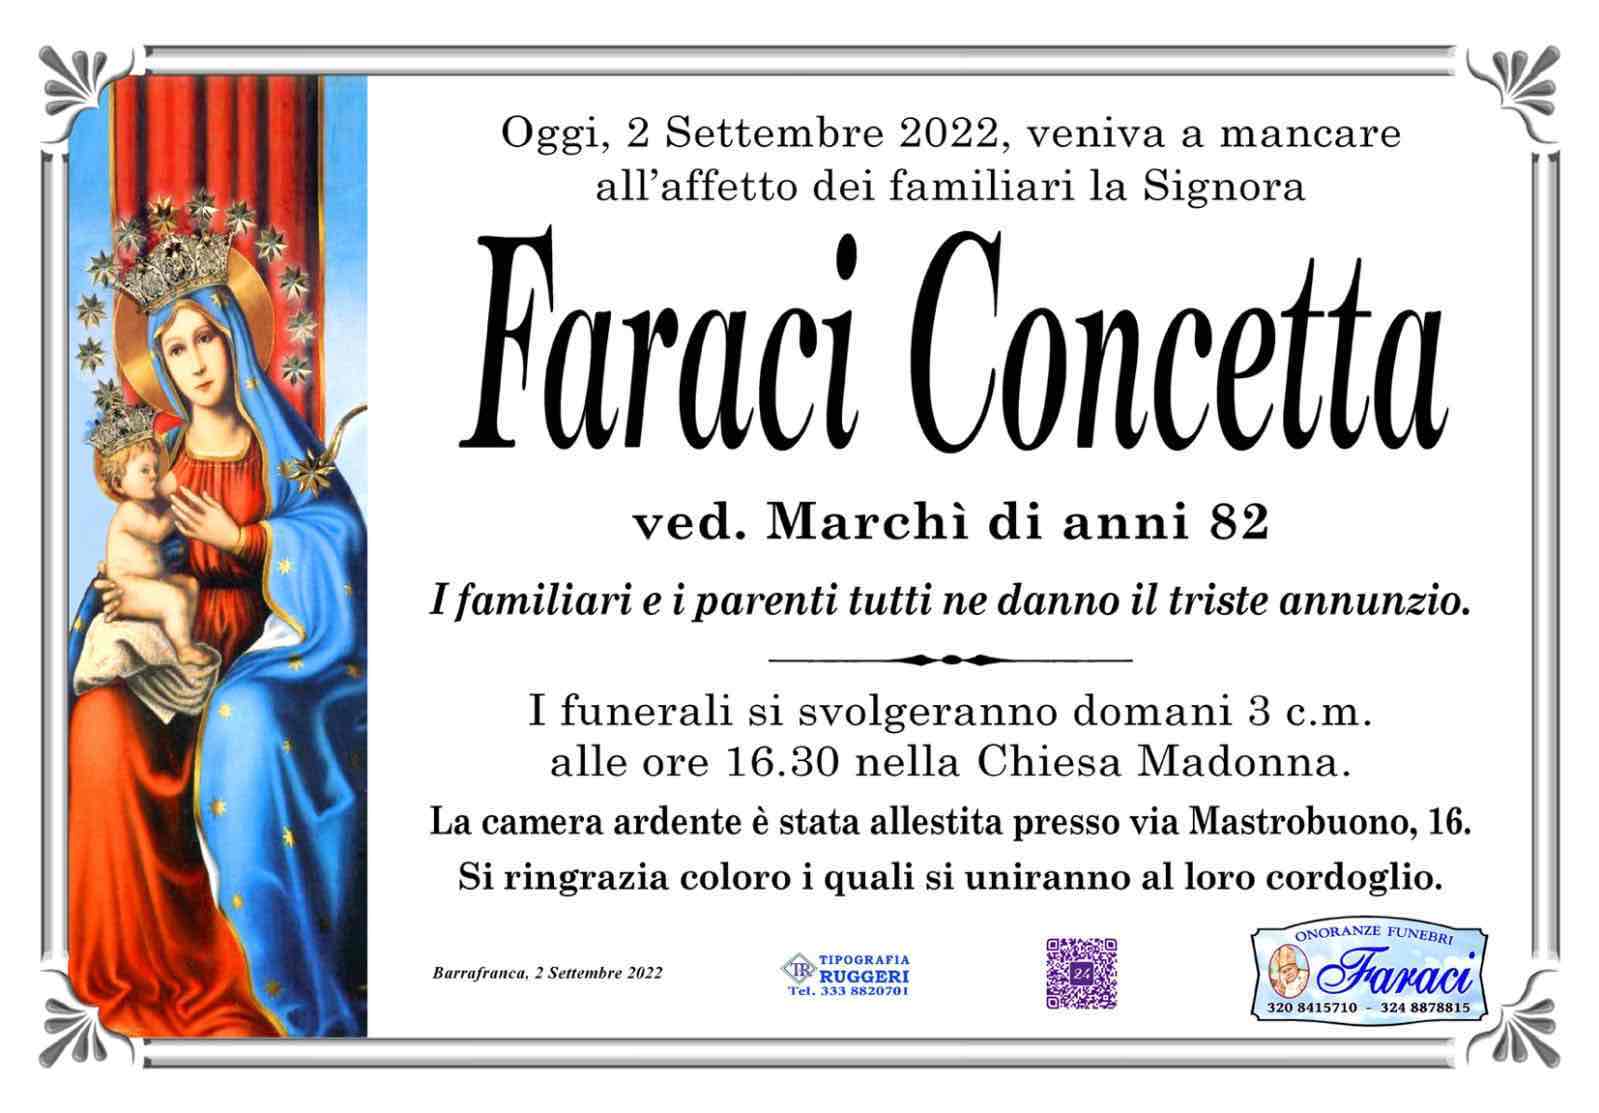 Concetta Faraci